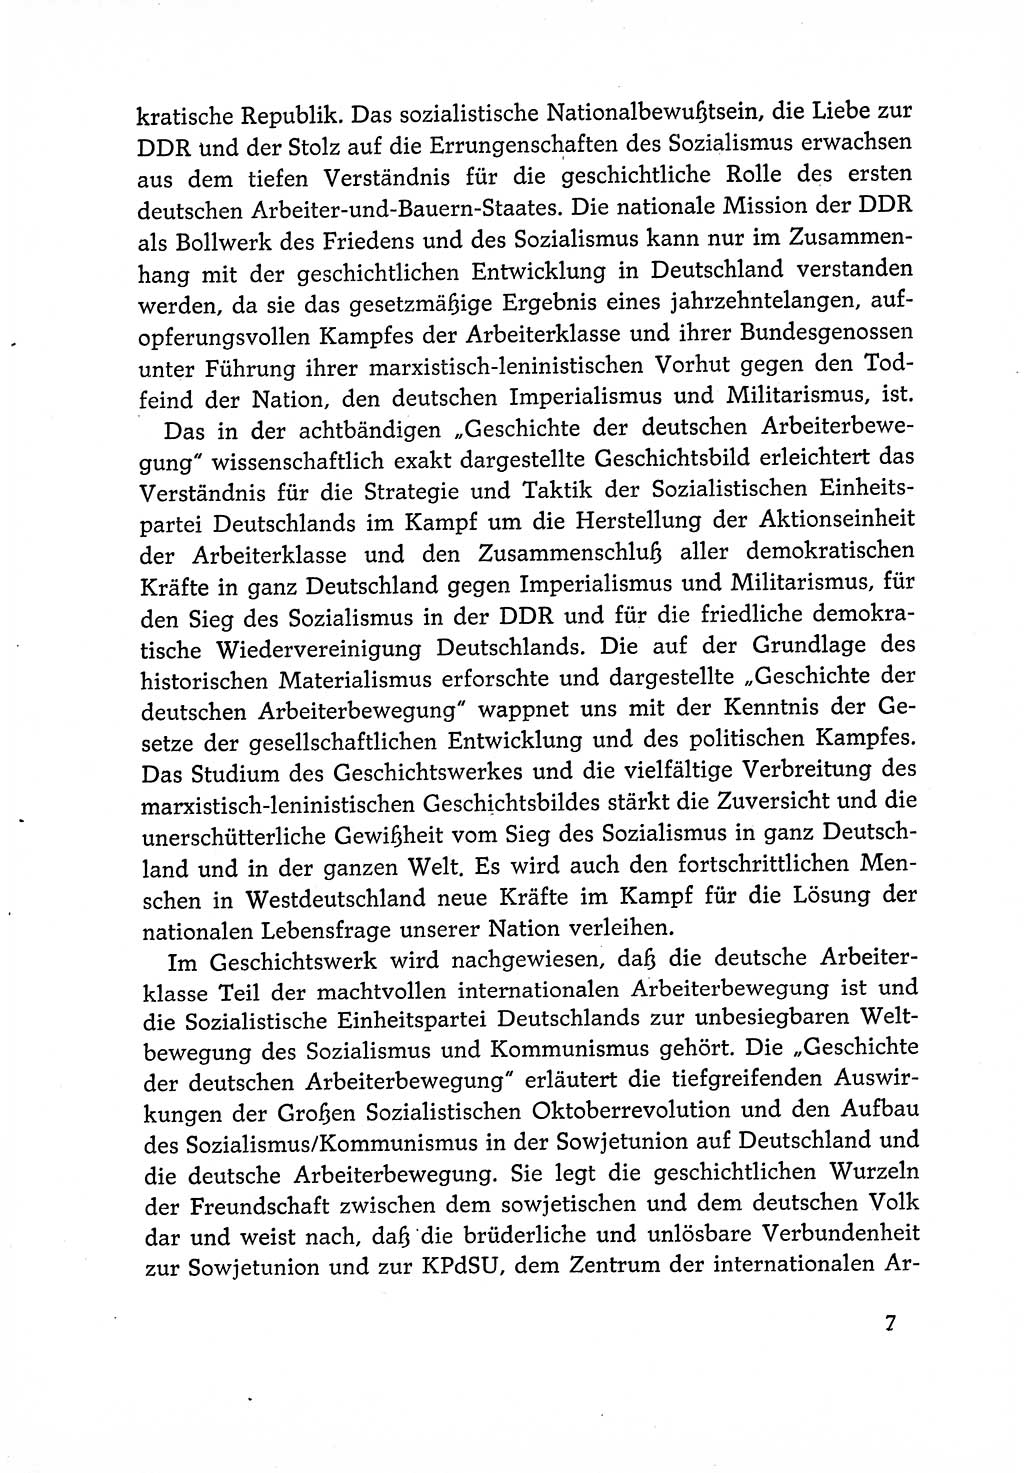 Dokumente der Sozialistischen Einheitspartei Deutschlands (SED) [Deutsche Demokratische Republik (DDR)] 1966-1967, Seite 7 (Dok. SED DDR 1966-1967, S. 7)